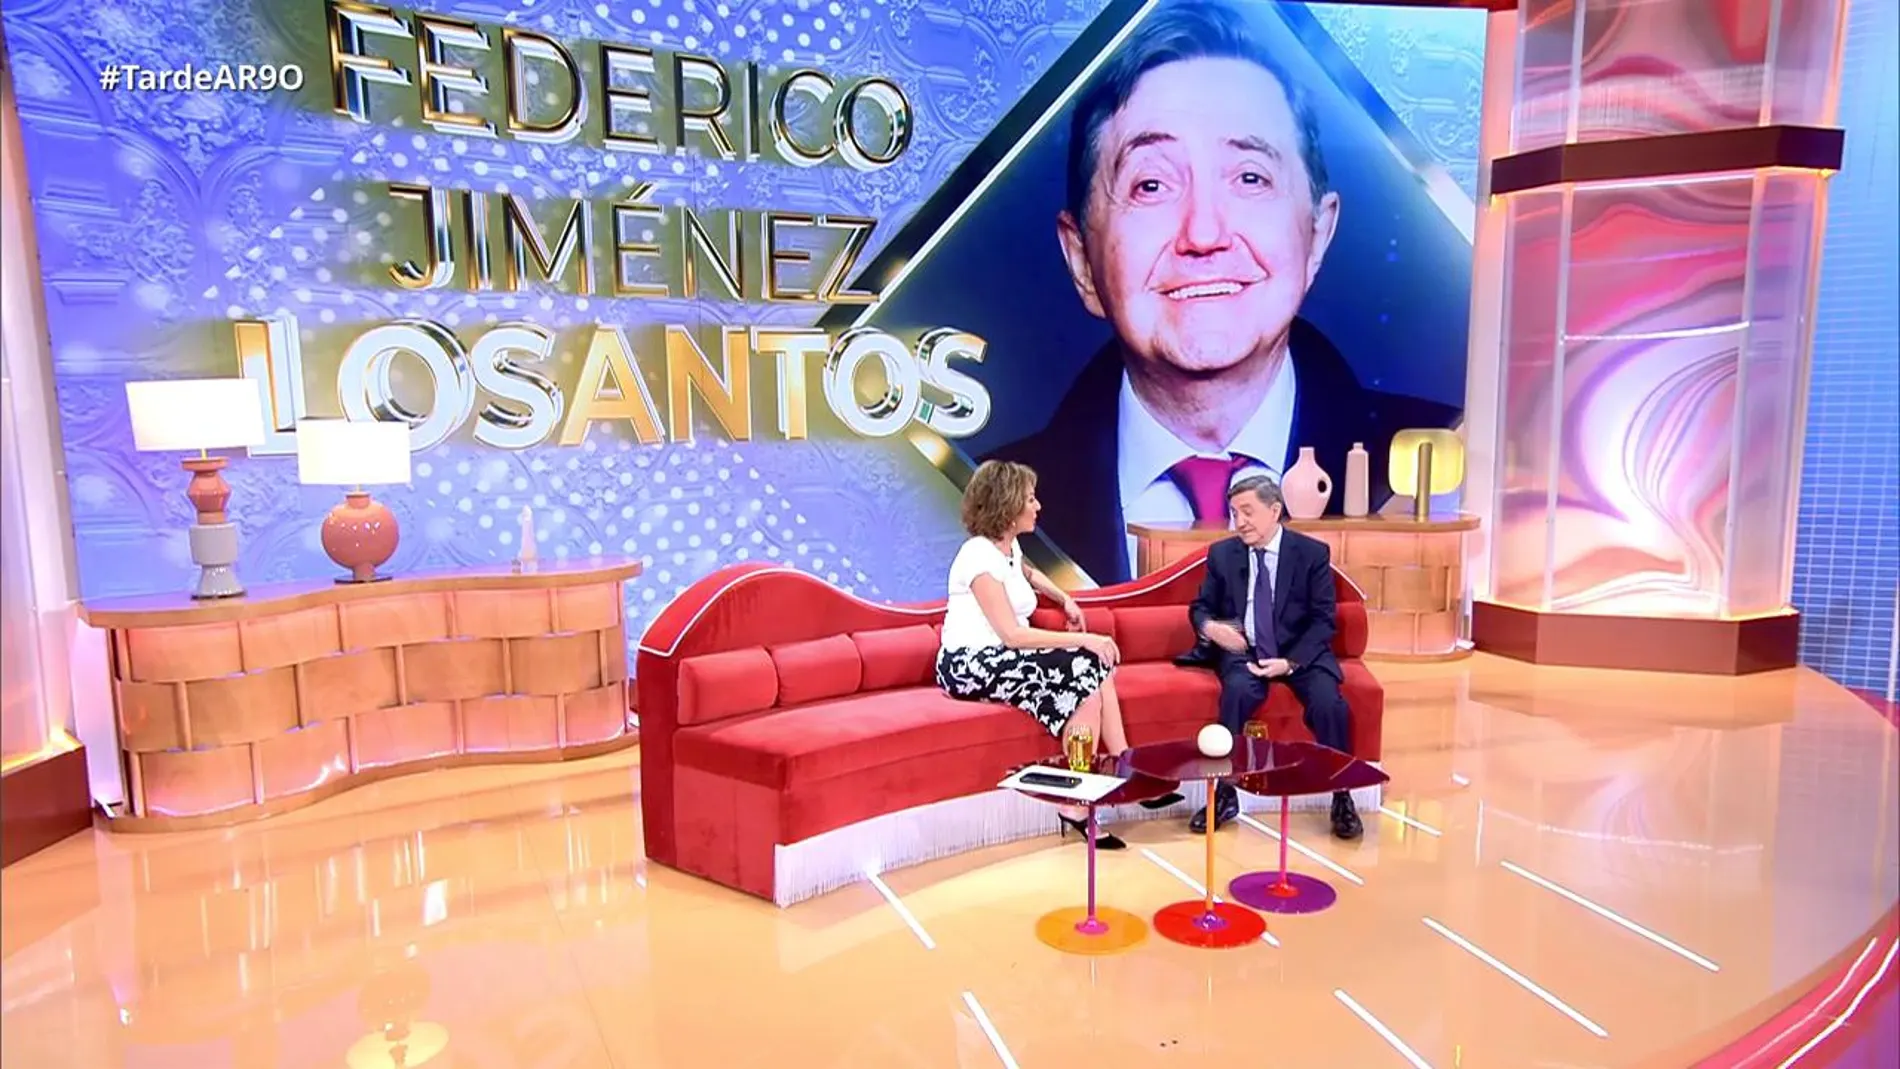 Jiménez Losantos, en 'TardeAR': así ha sido su esperada vuelta a la tele 14 años después